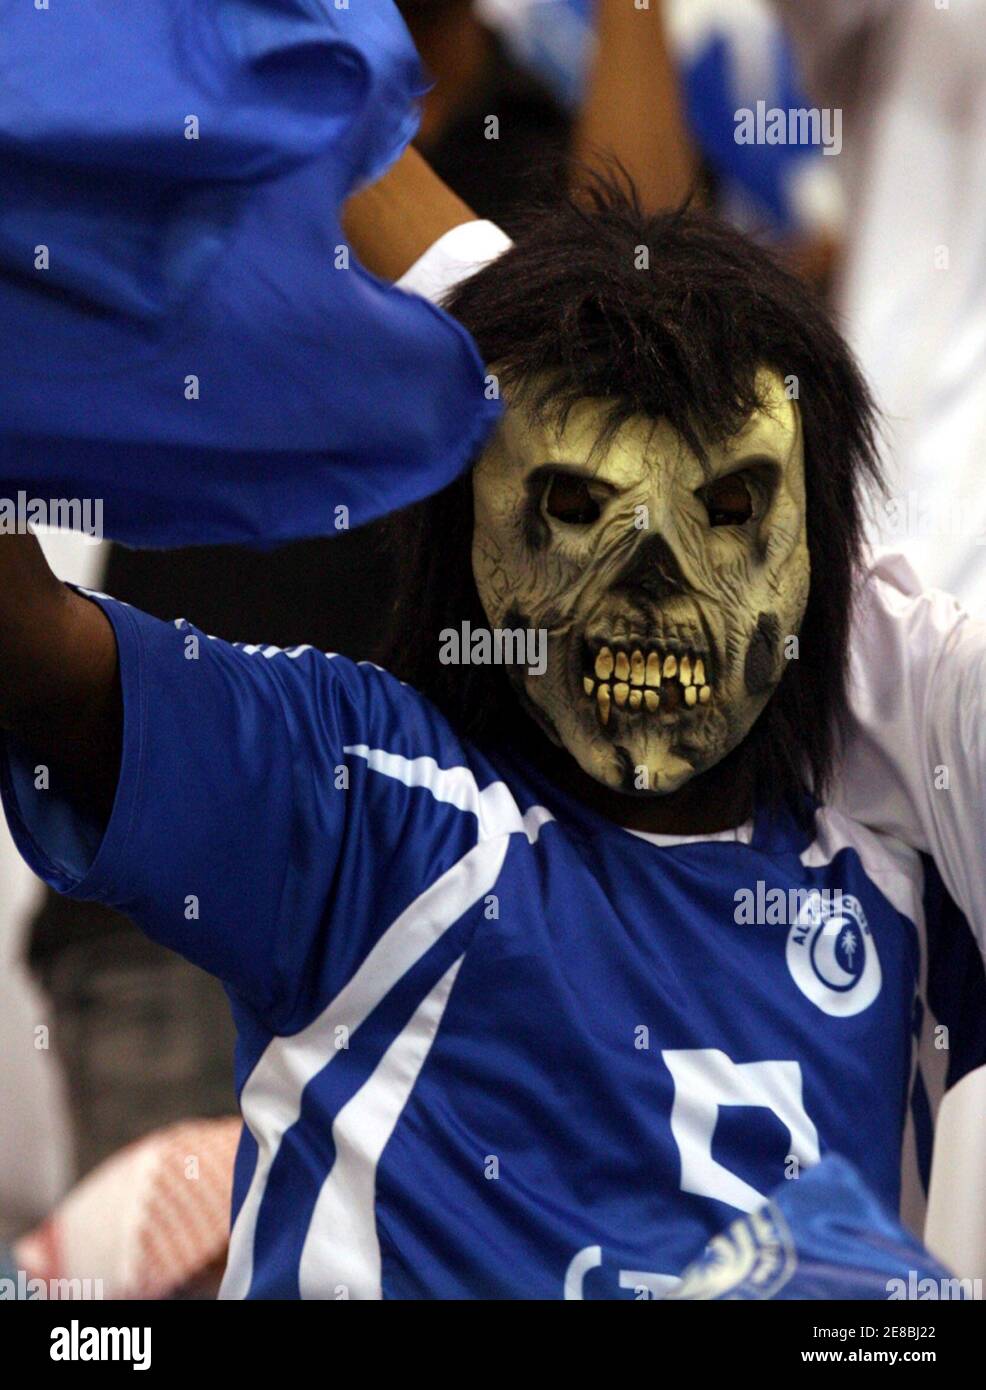 Un fan de al-Hilal anima a su equipo durante su partido contra al-Nasr en el partido final de fútbol de la Copa Príncipe Saudita Faisal Bin Fahad en Riad el 2 de abril de 2008. REUTERS/Fahad Shadeed (ARABIA SAUDITA) Foto de stock